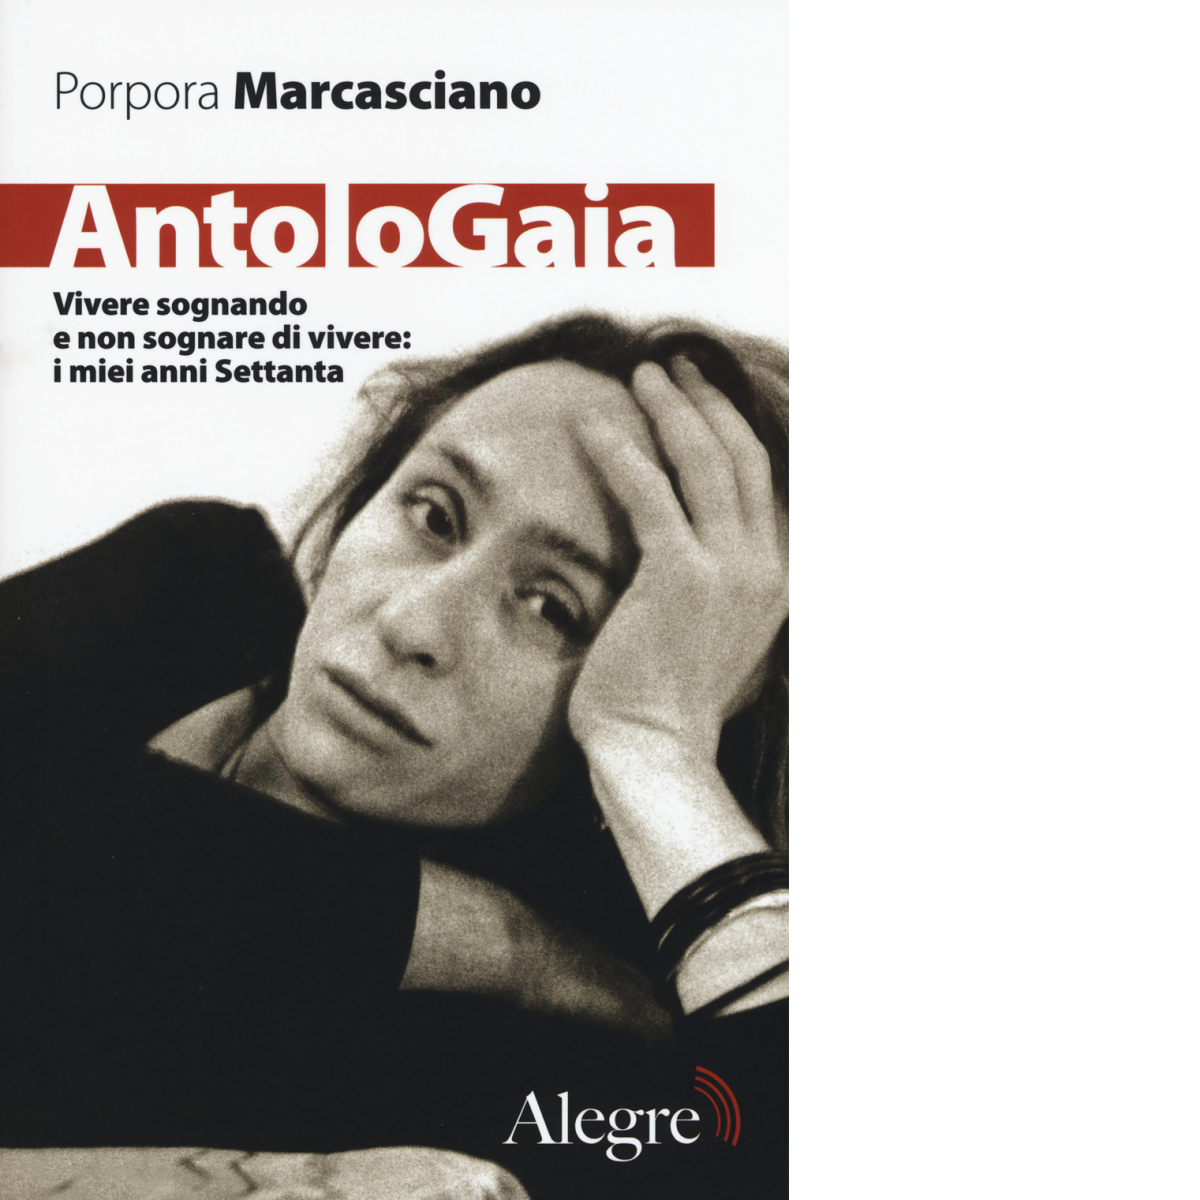 ANTOLOGAIA di PORPORA MARCASCIANO - edizioni alegre, 2015